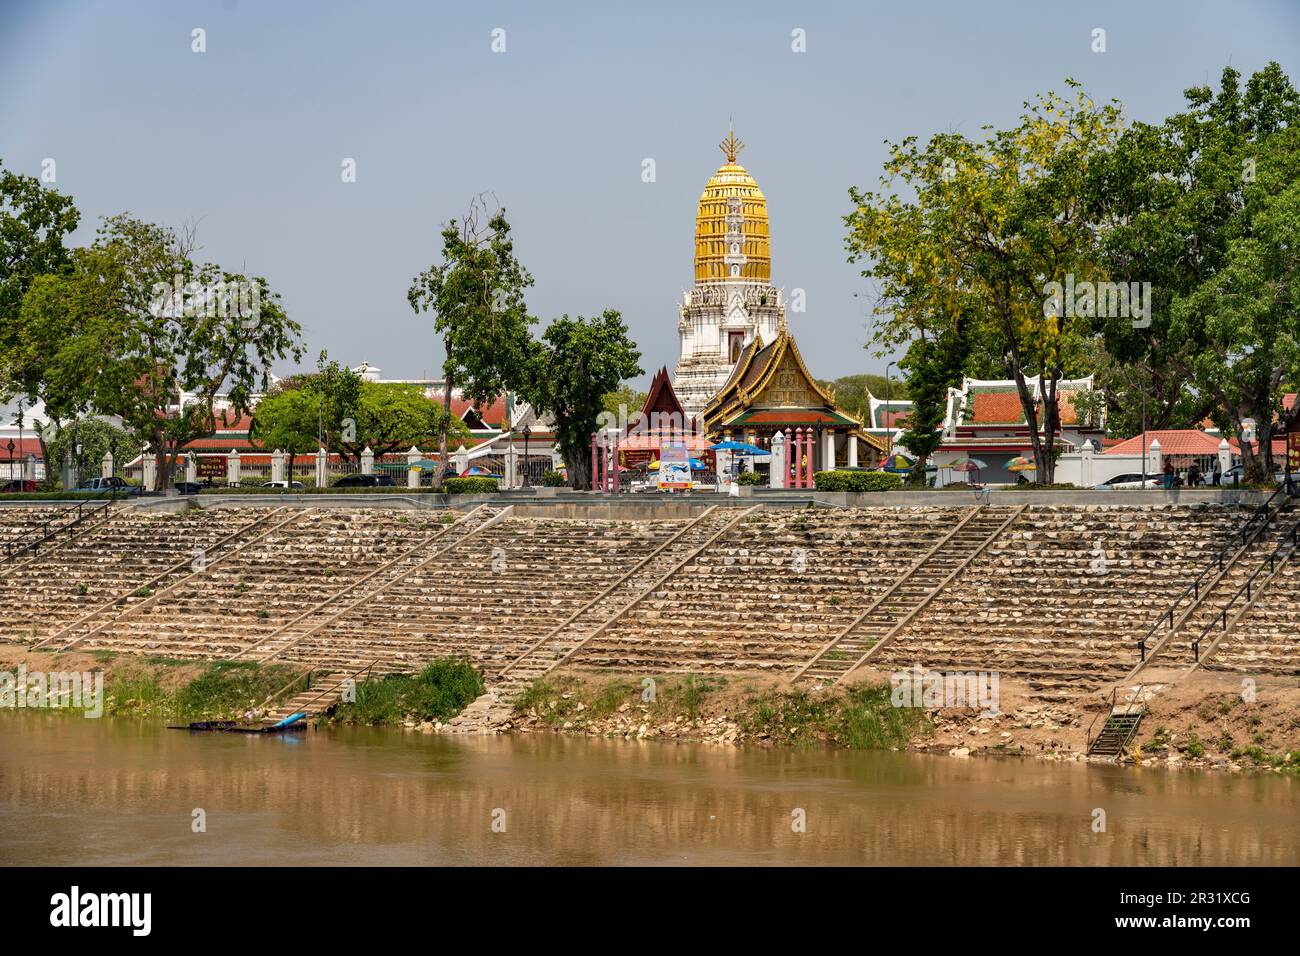 Der buddhistische Tempel Wat Phra Si Rattana Mahathat und der Fluss  Mae Nam Nan in Phitsanulok, Thailand, Asien  |  Wat Phra Si Rattana Mahathat  bud Stock Photo